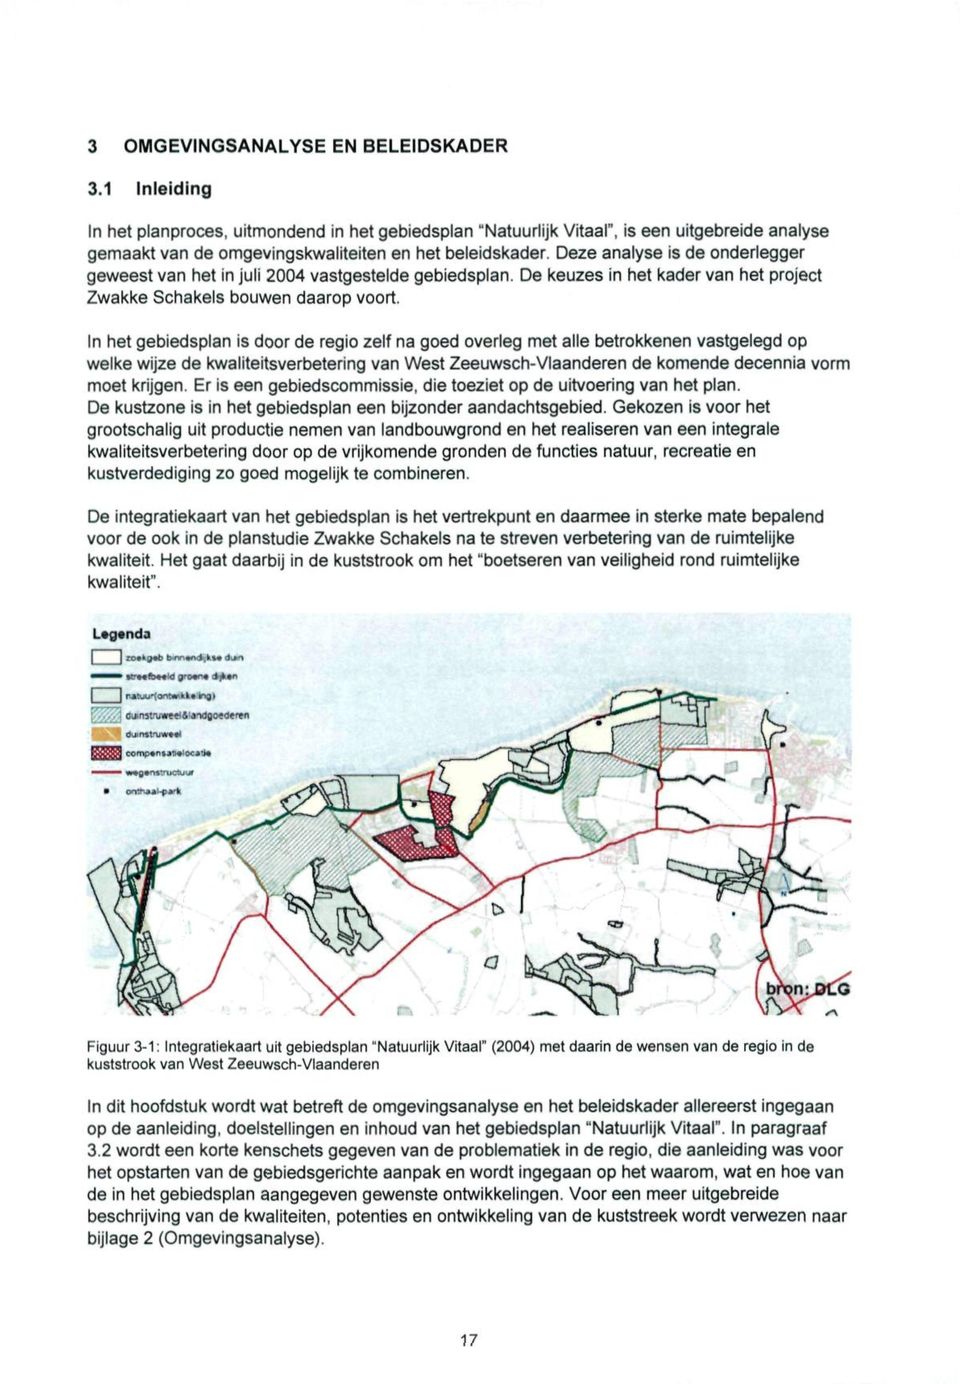 Deze analyse is de onderlegger geweest van het in juli 2004 vastgestelde gebiedsplan.